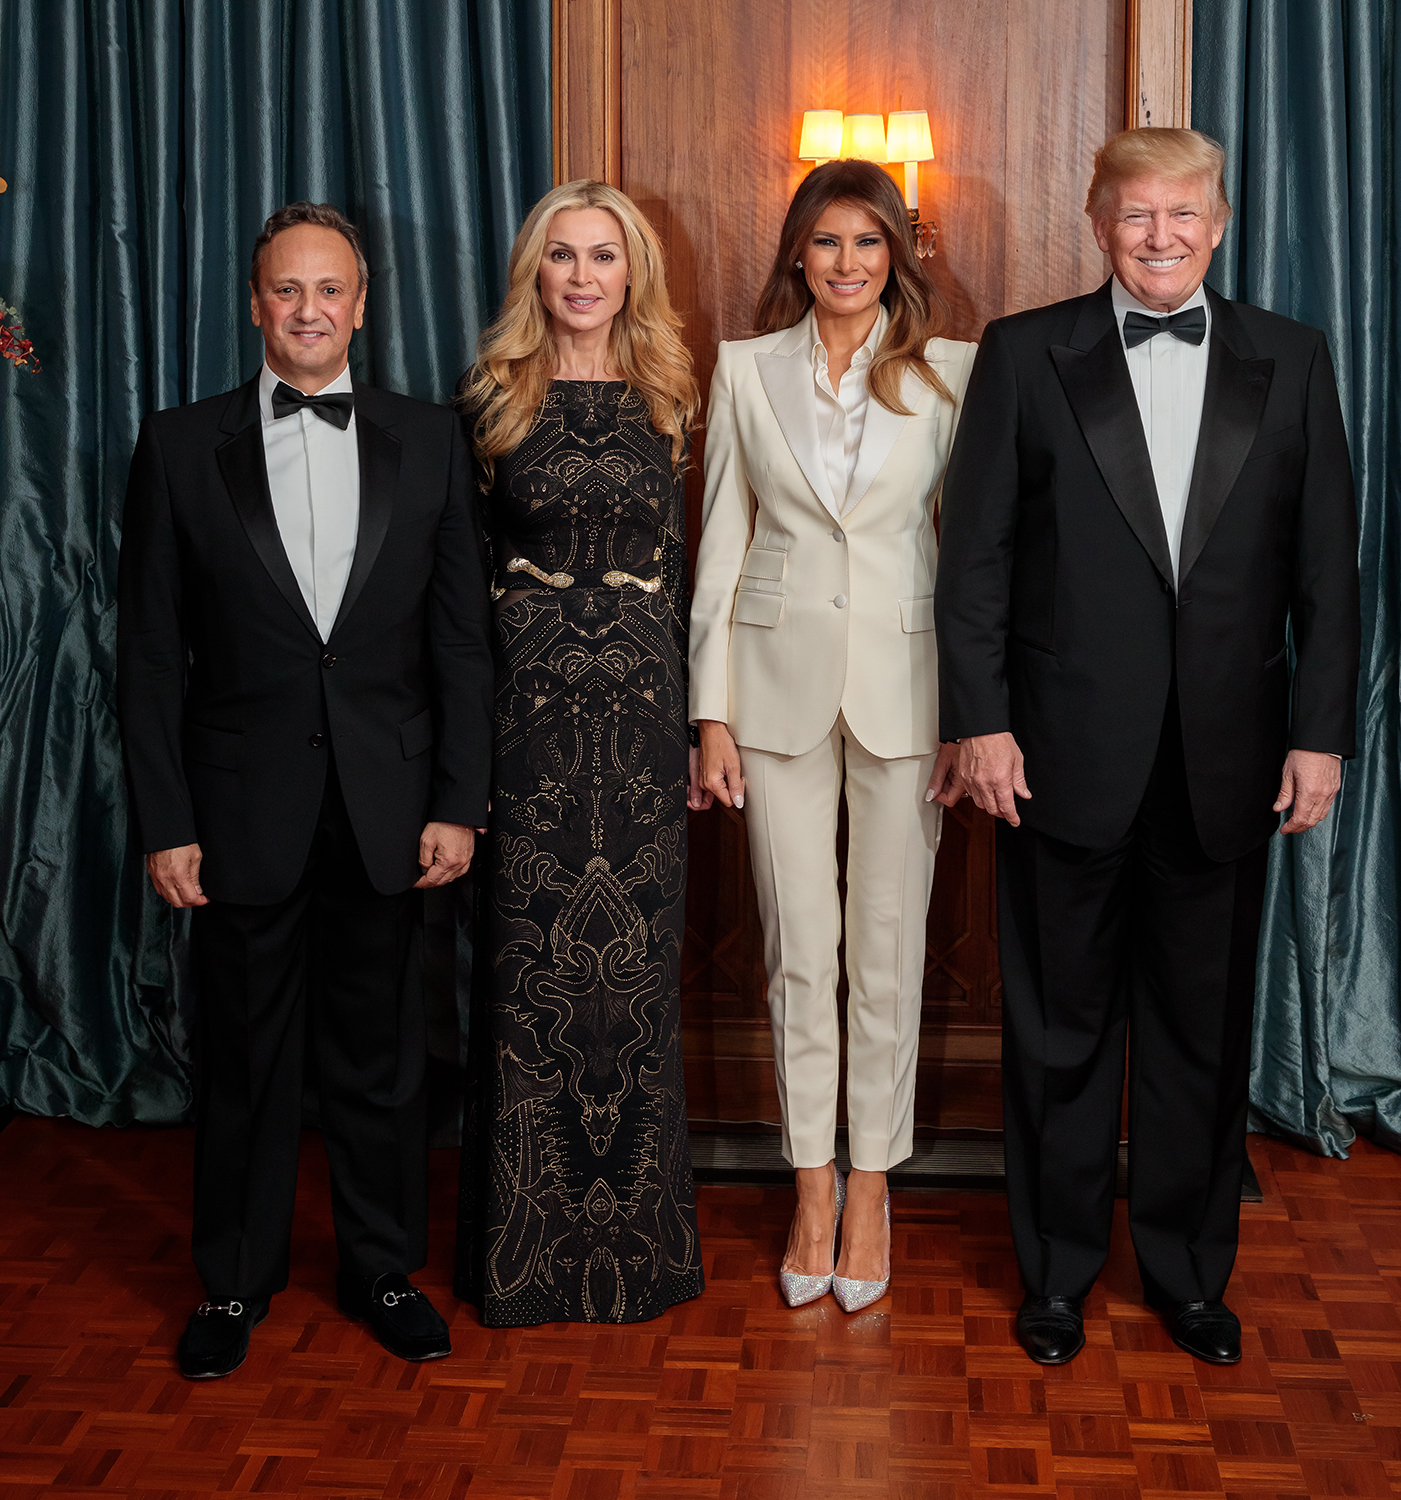 الرئيس ترامب يحضر حفل سفارة الكويت بواشنطن لتكريم سيدة امريكا الاولى لجهودها الانسانية